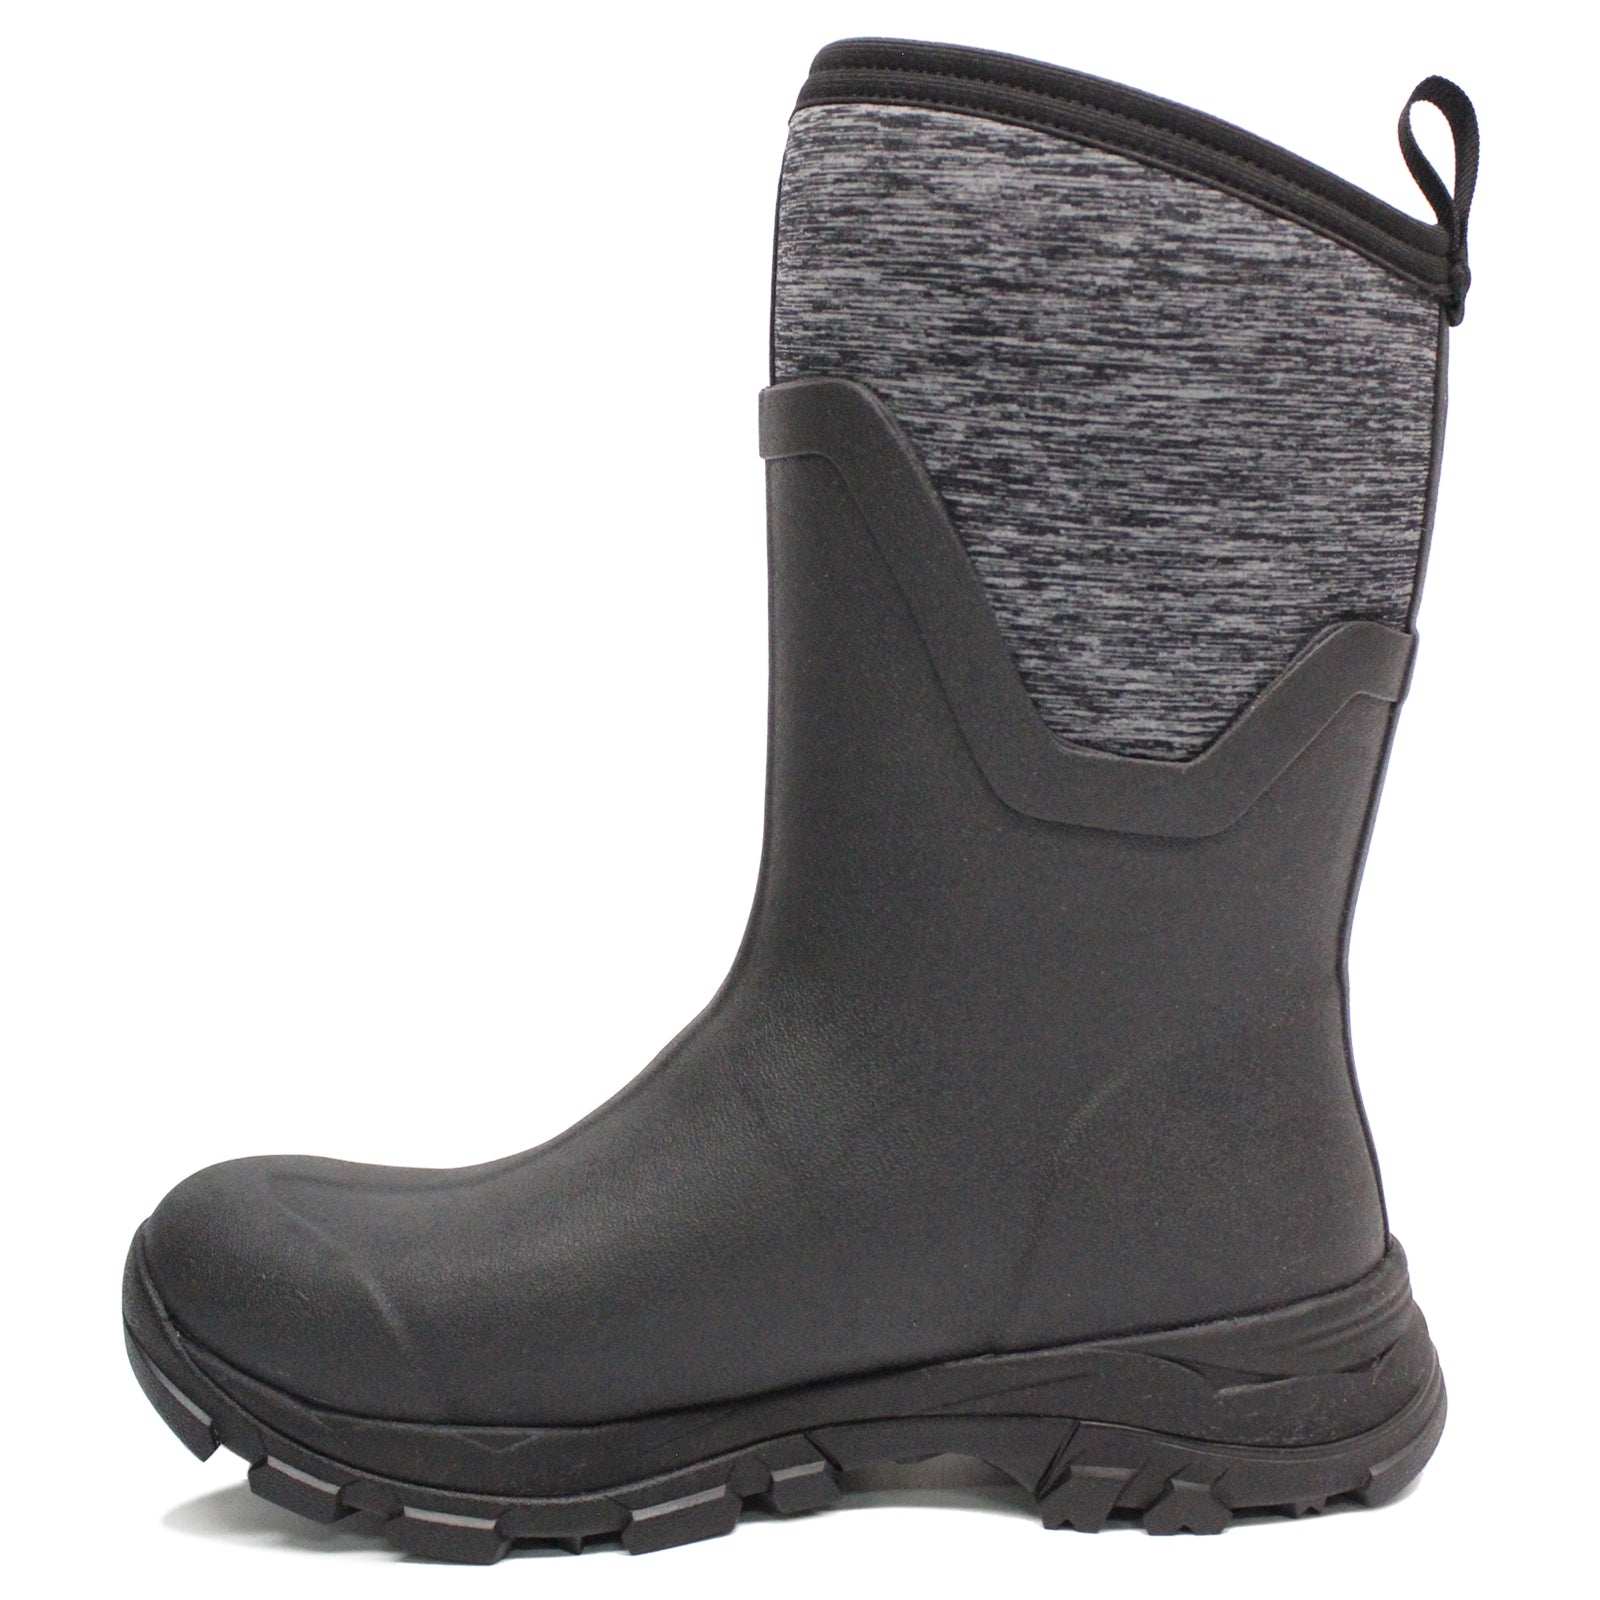 Muck Boot Arctic Ice Vibram Arctic Grip All Terrain Waterproof Women's Boots#color_black heather jersey